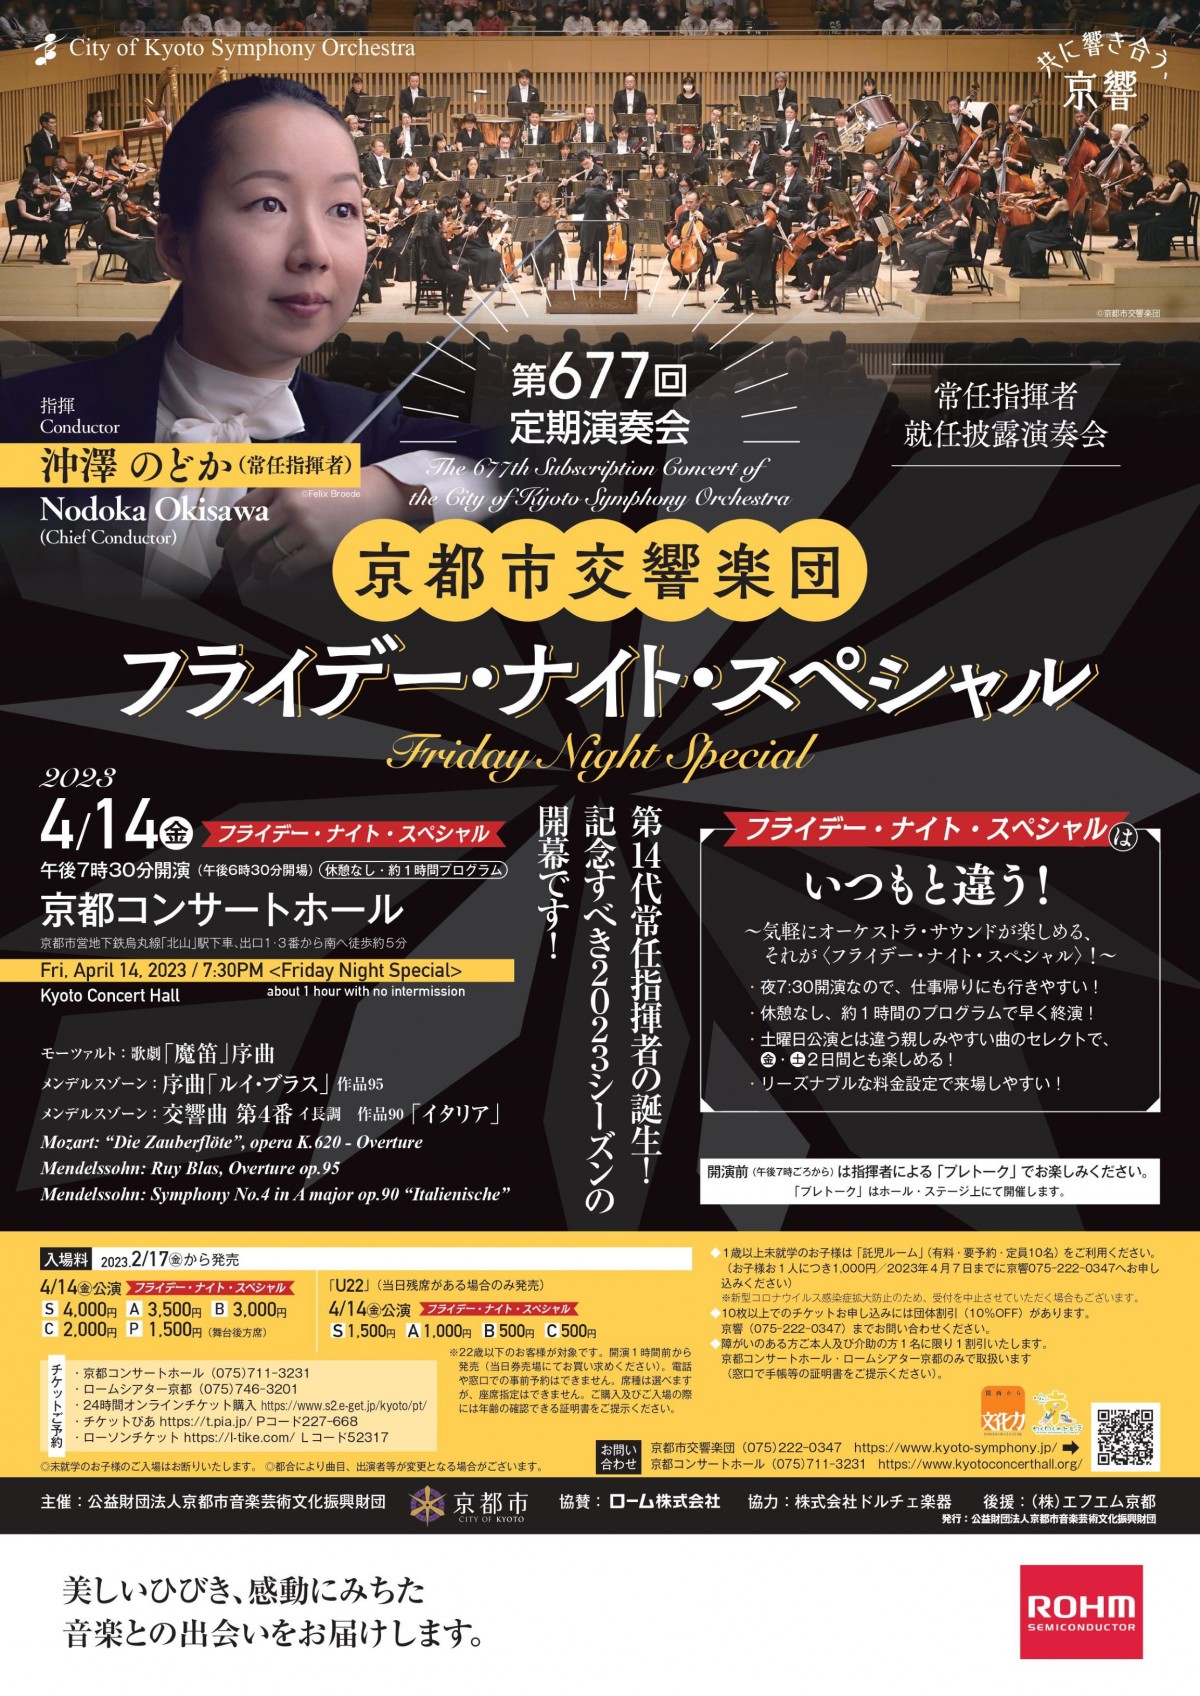 京都市交響楽団第677回定期演奏会のフライヤー画像